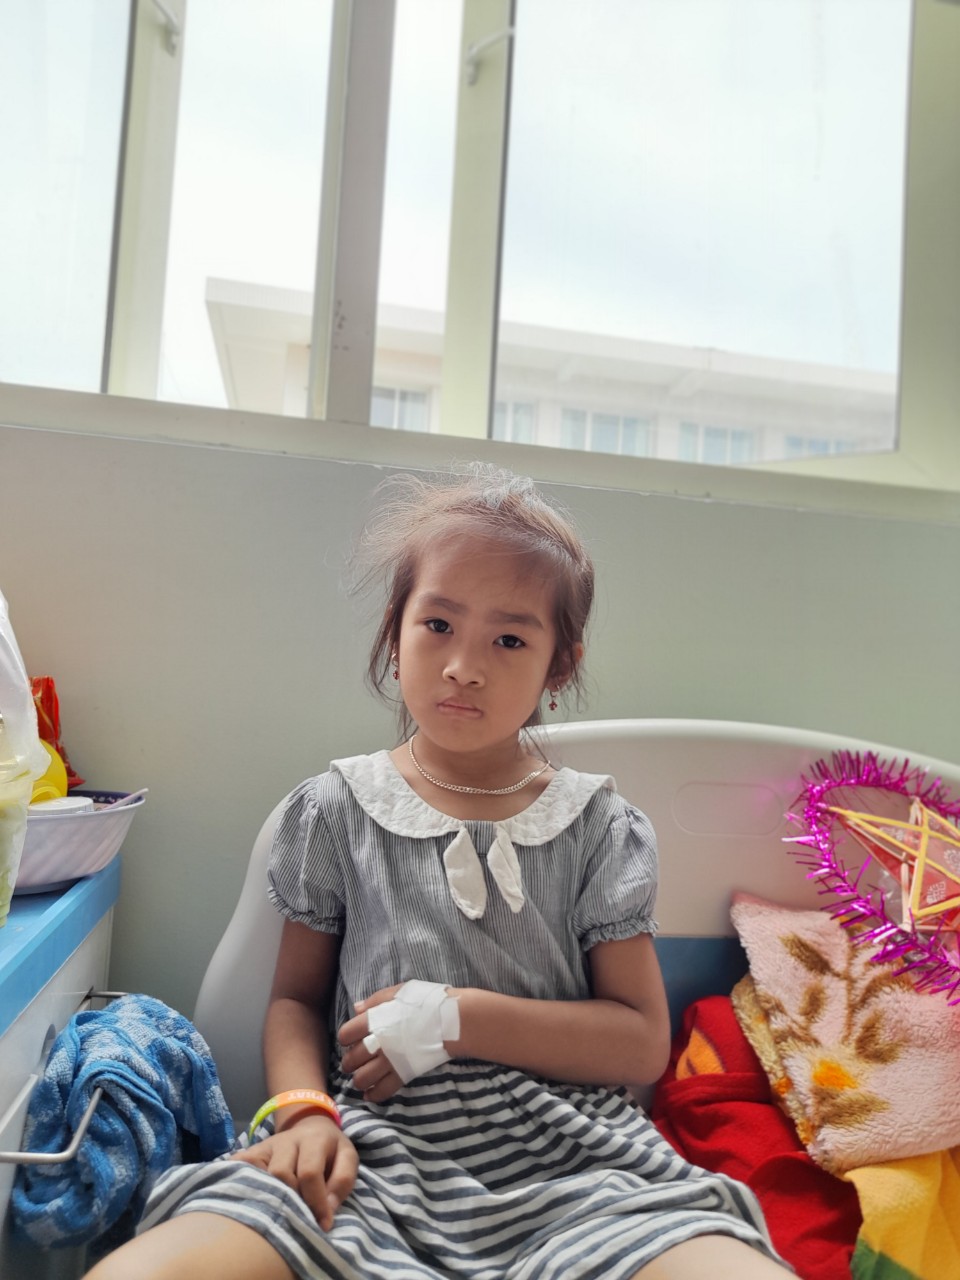 Điều ước giản đơn của bé gái 6 tuổi mắc bệnh hiểm nghèo không tiền cứu chữa: &quot;Cháu ước khỏi bệnh để không phải chịu đau đớn nữa&quot; - Ảnh 3.